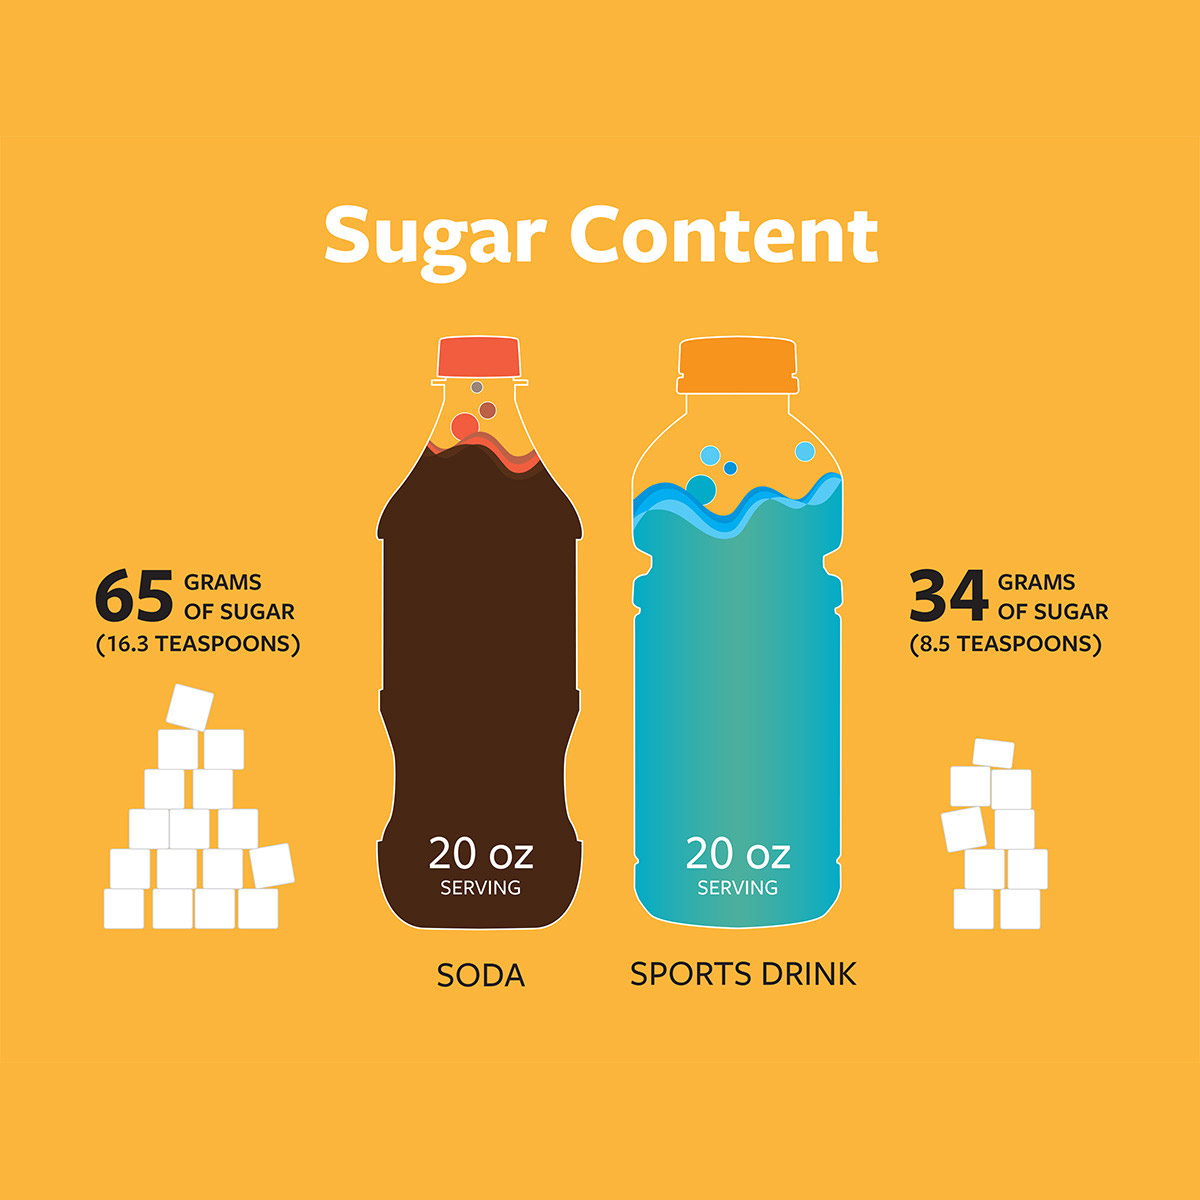 Sugar content in soda